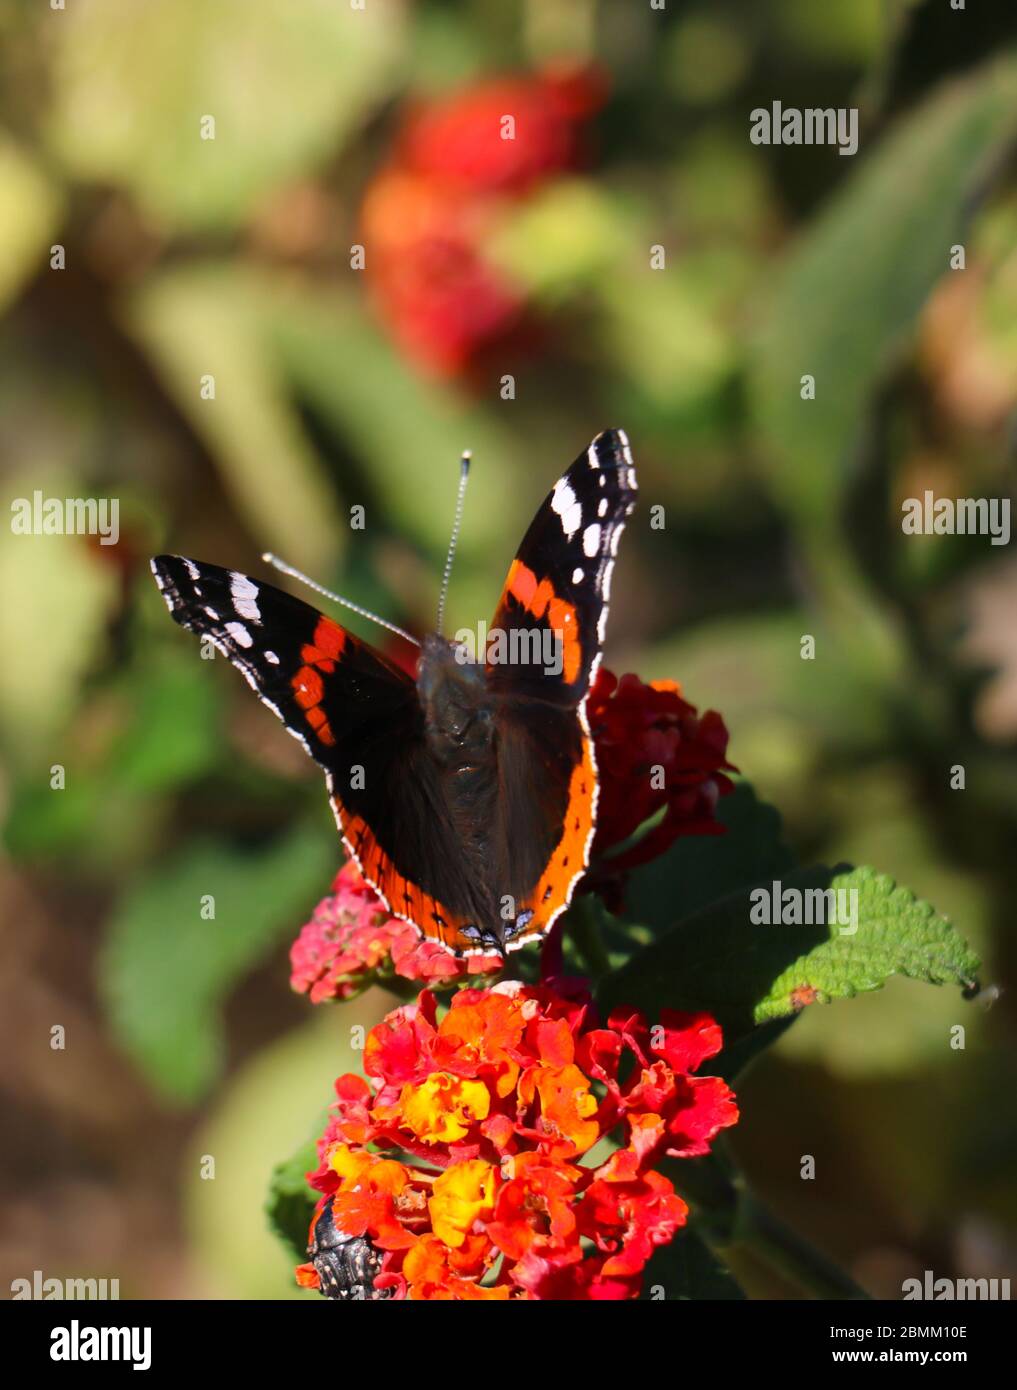 Papillon rouge amiral avec ailes noires, bandes orange et taches blanches pollinisant la fleur rouge et jaune. Flou vert nature arrière-plan, portrai vertical Banque D'Images